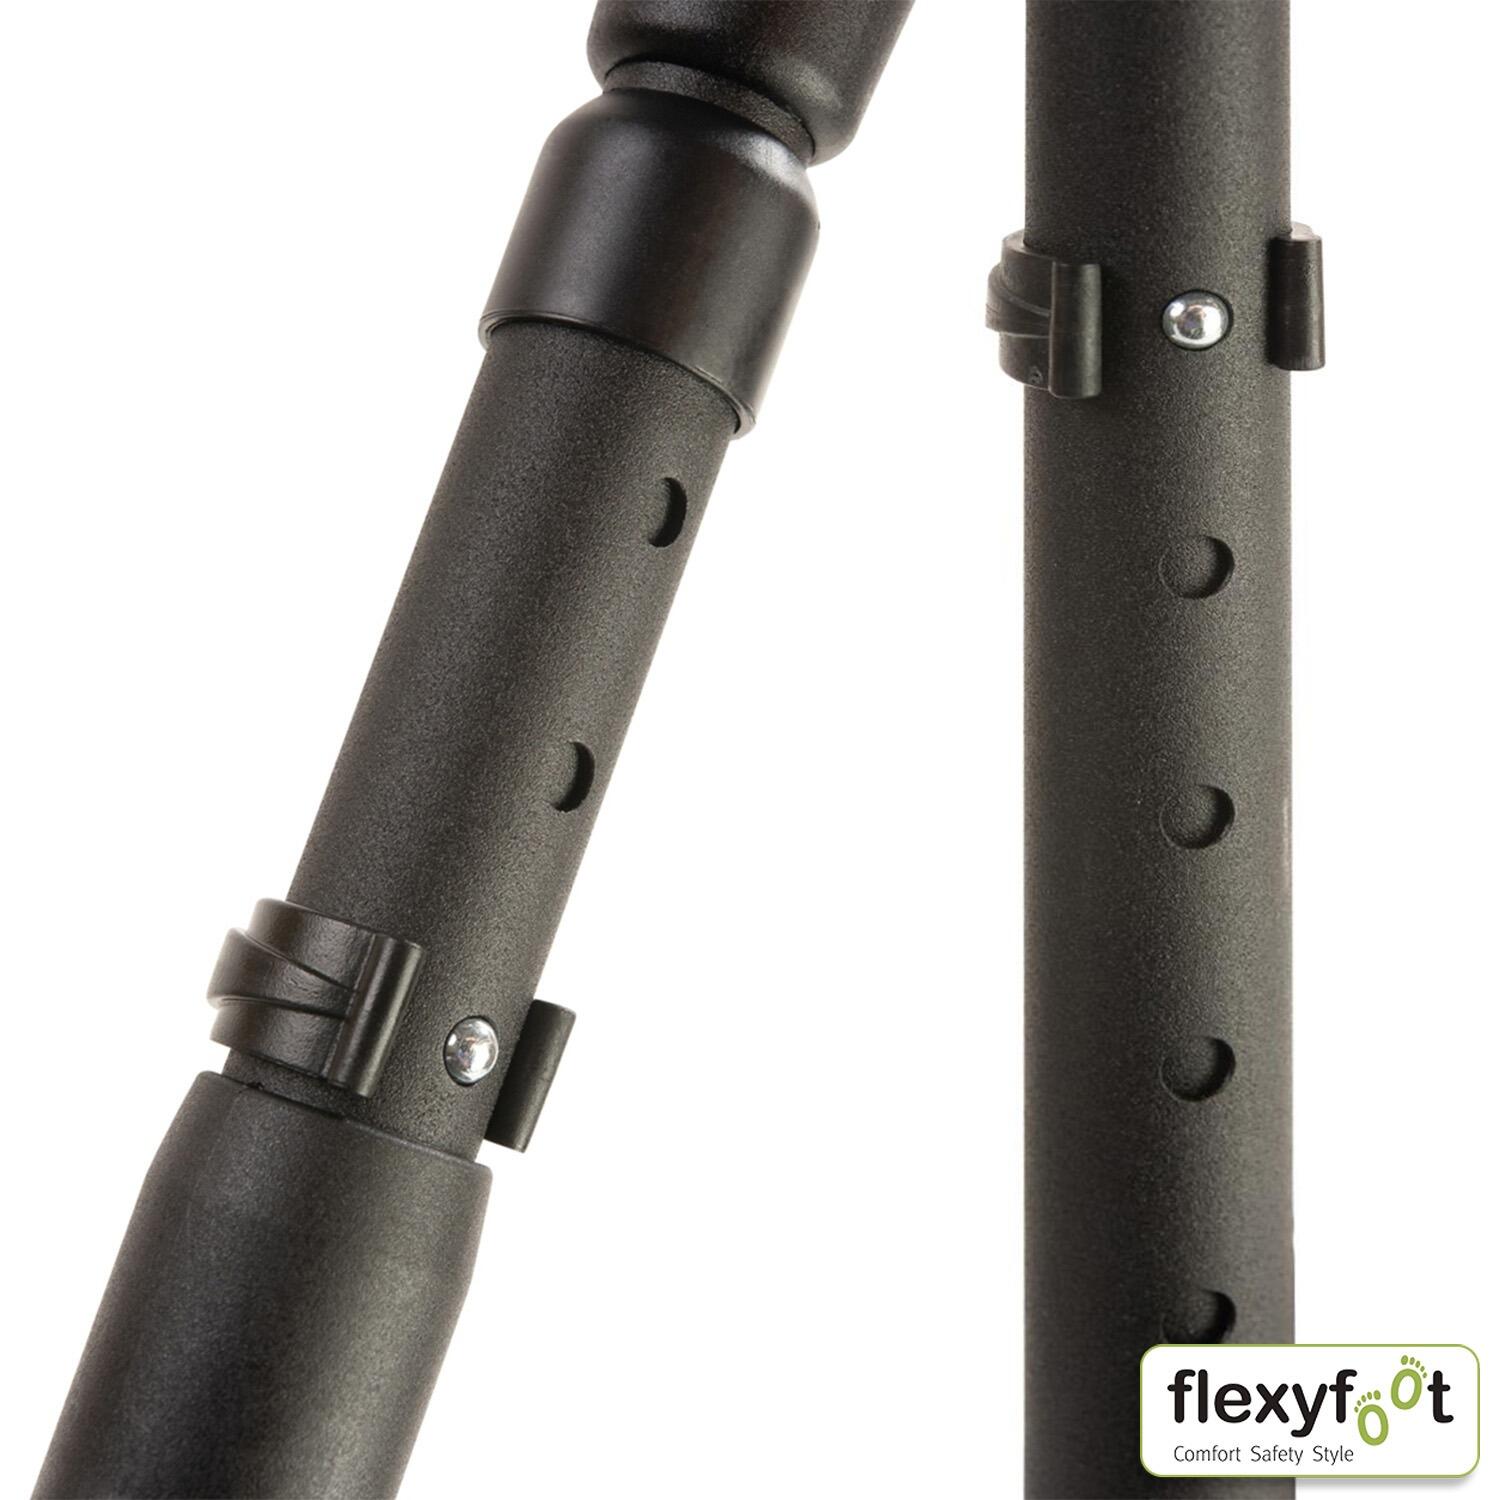 Flexyfoot Soft Grip Shock Absorbing Crutch - Textured Black - adjustment